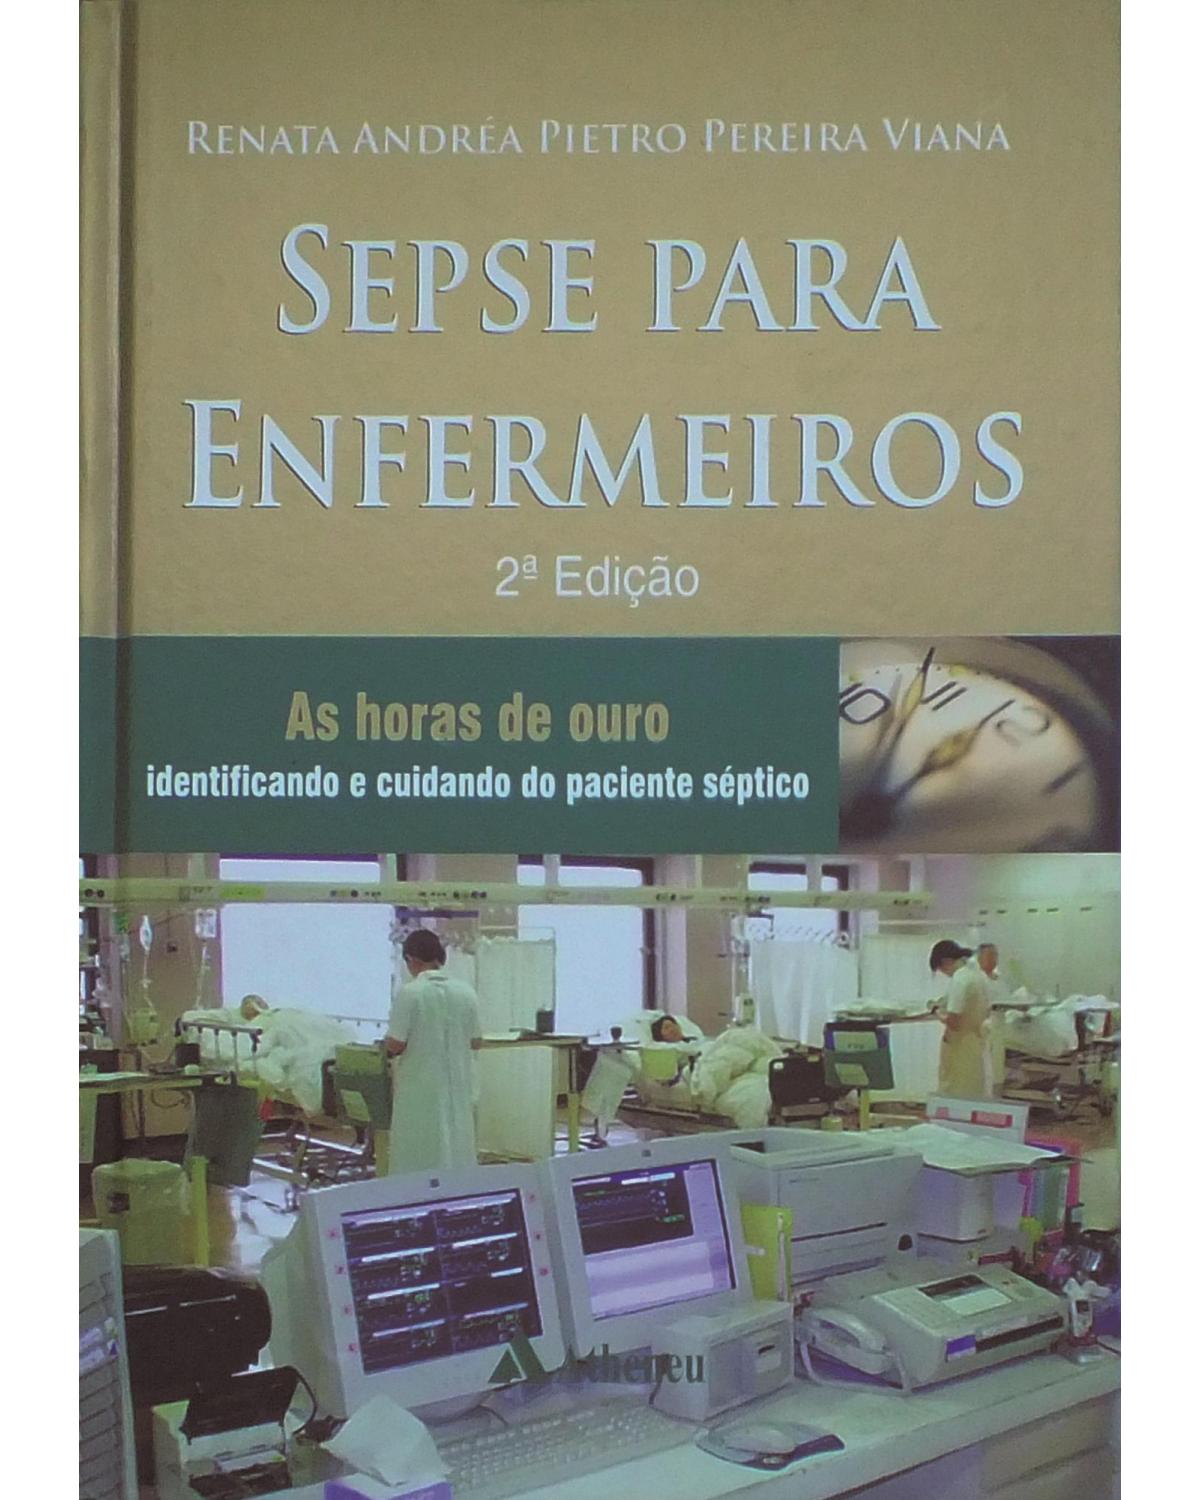 Sepse para enfermeiros - as horas de ouro - Identificando e cuidando do paciente séptico - 2ª Edição | 2013